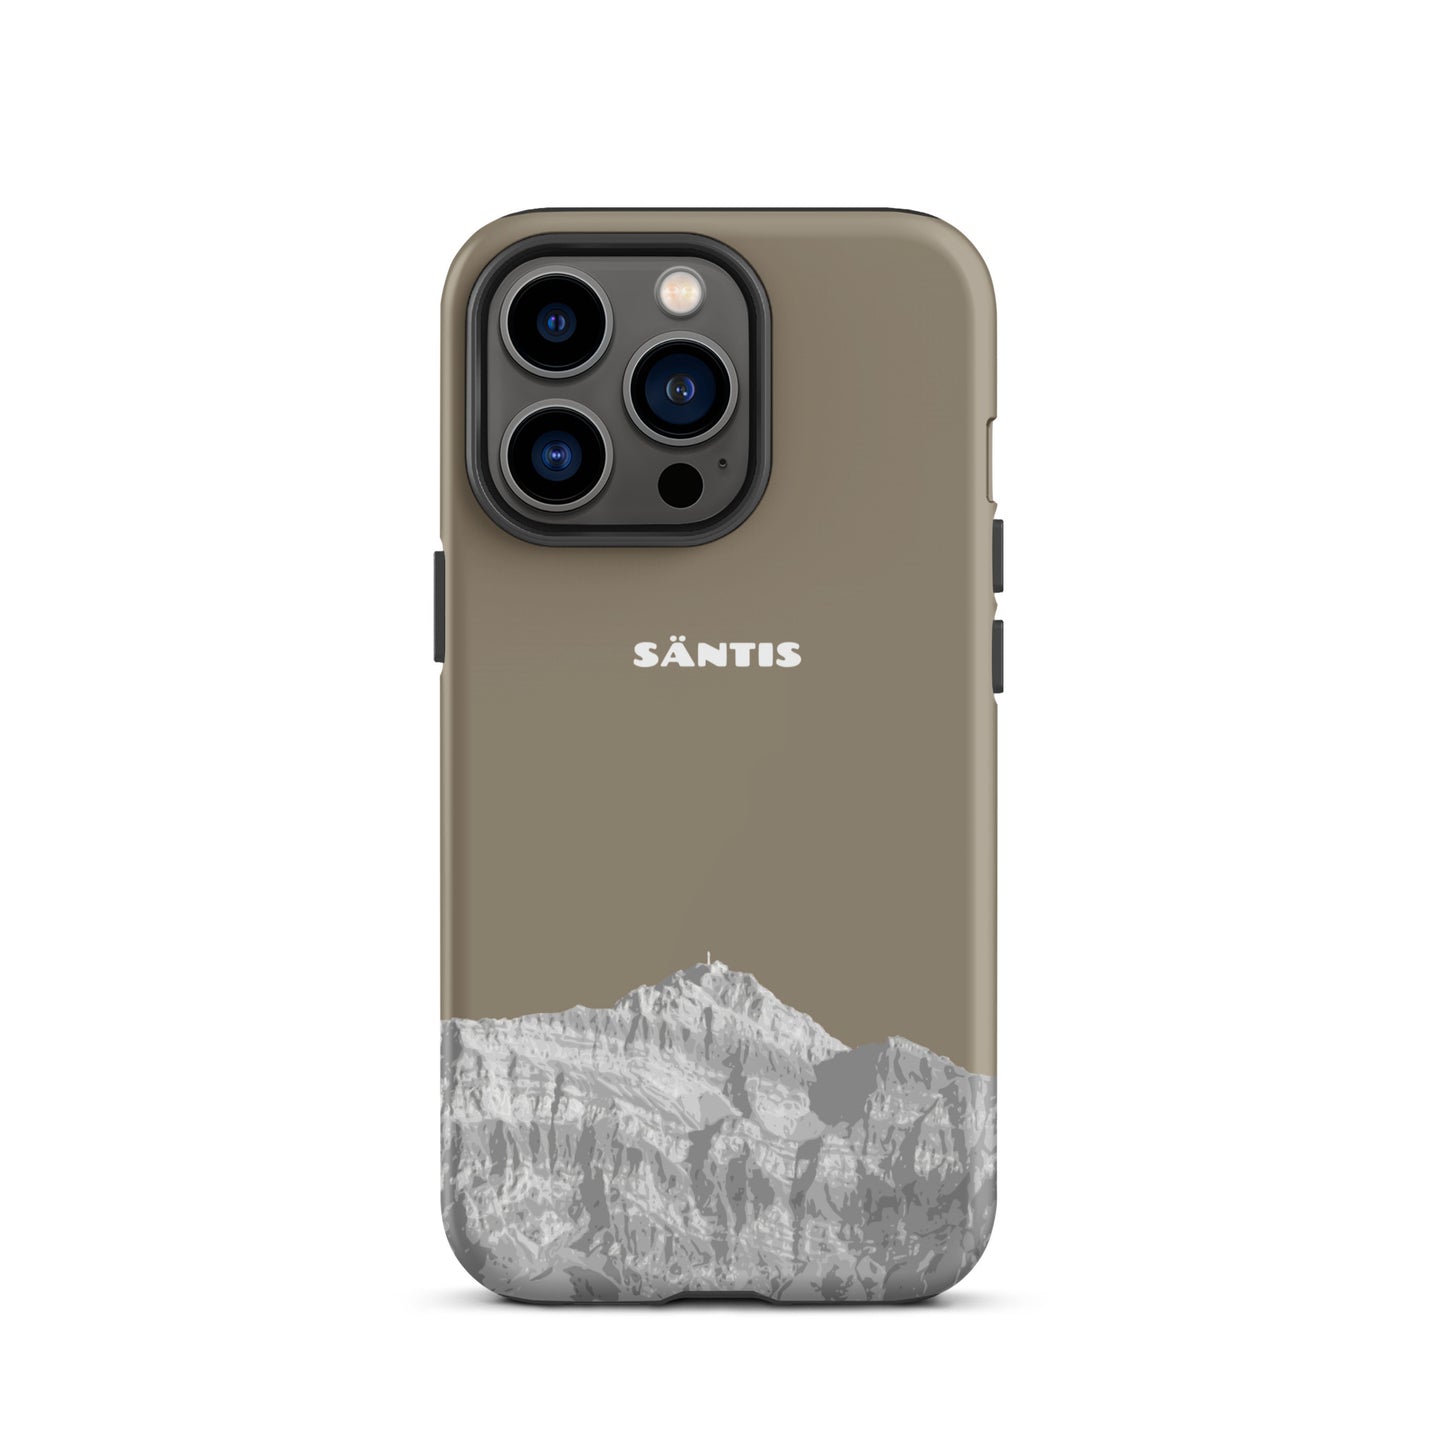 Hülle für das iPhone 13 Pro von Apple in der Farbe Graubraun, dass den Säntis im Alpstein zeigt.